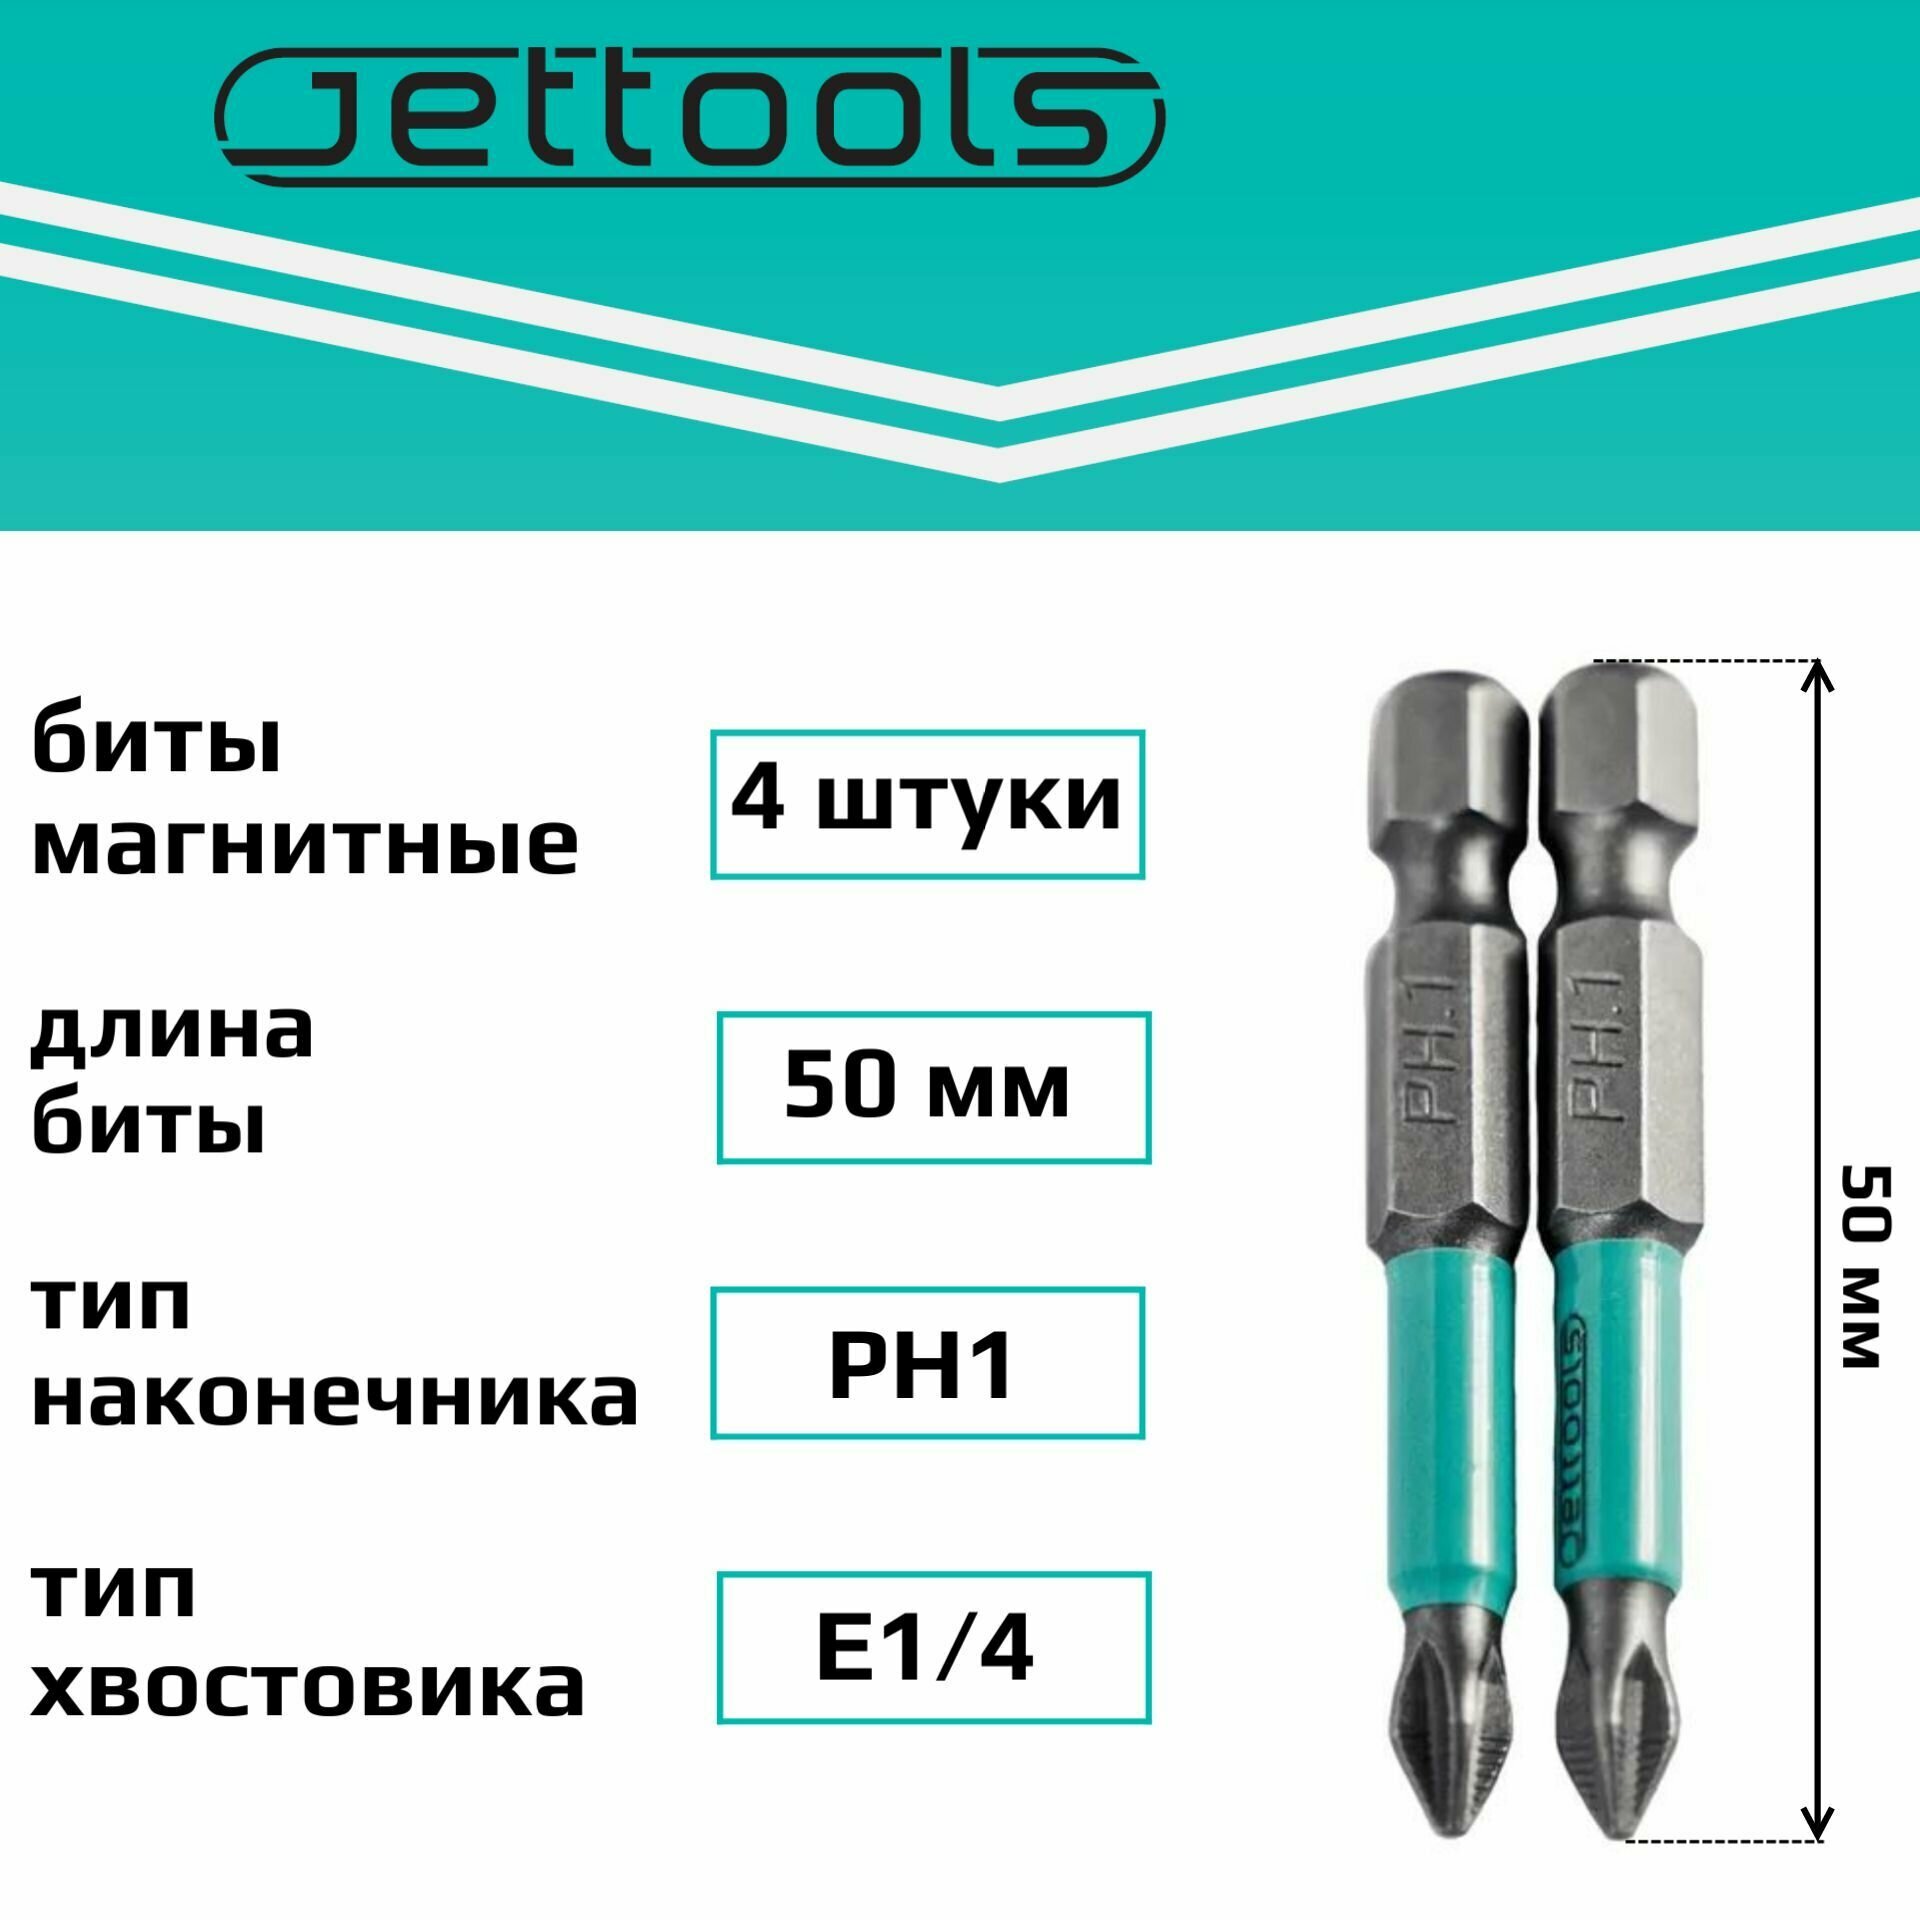 Бита PH1 50 мм Jettools магнитные для шуруповерта для больших нагрузок, 4 штуки